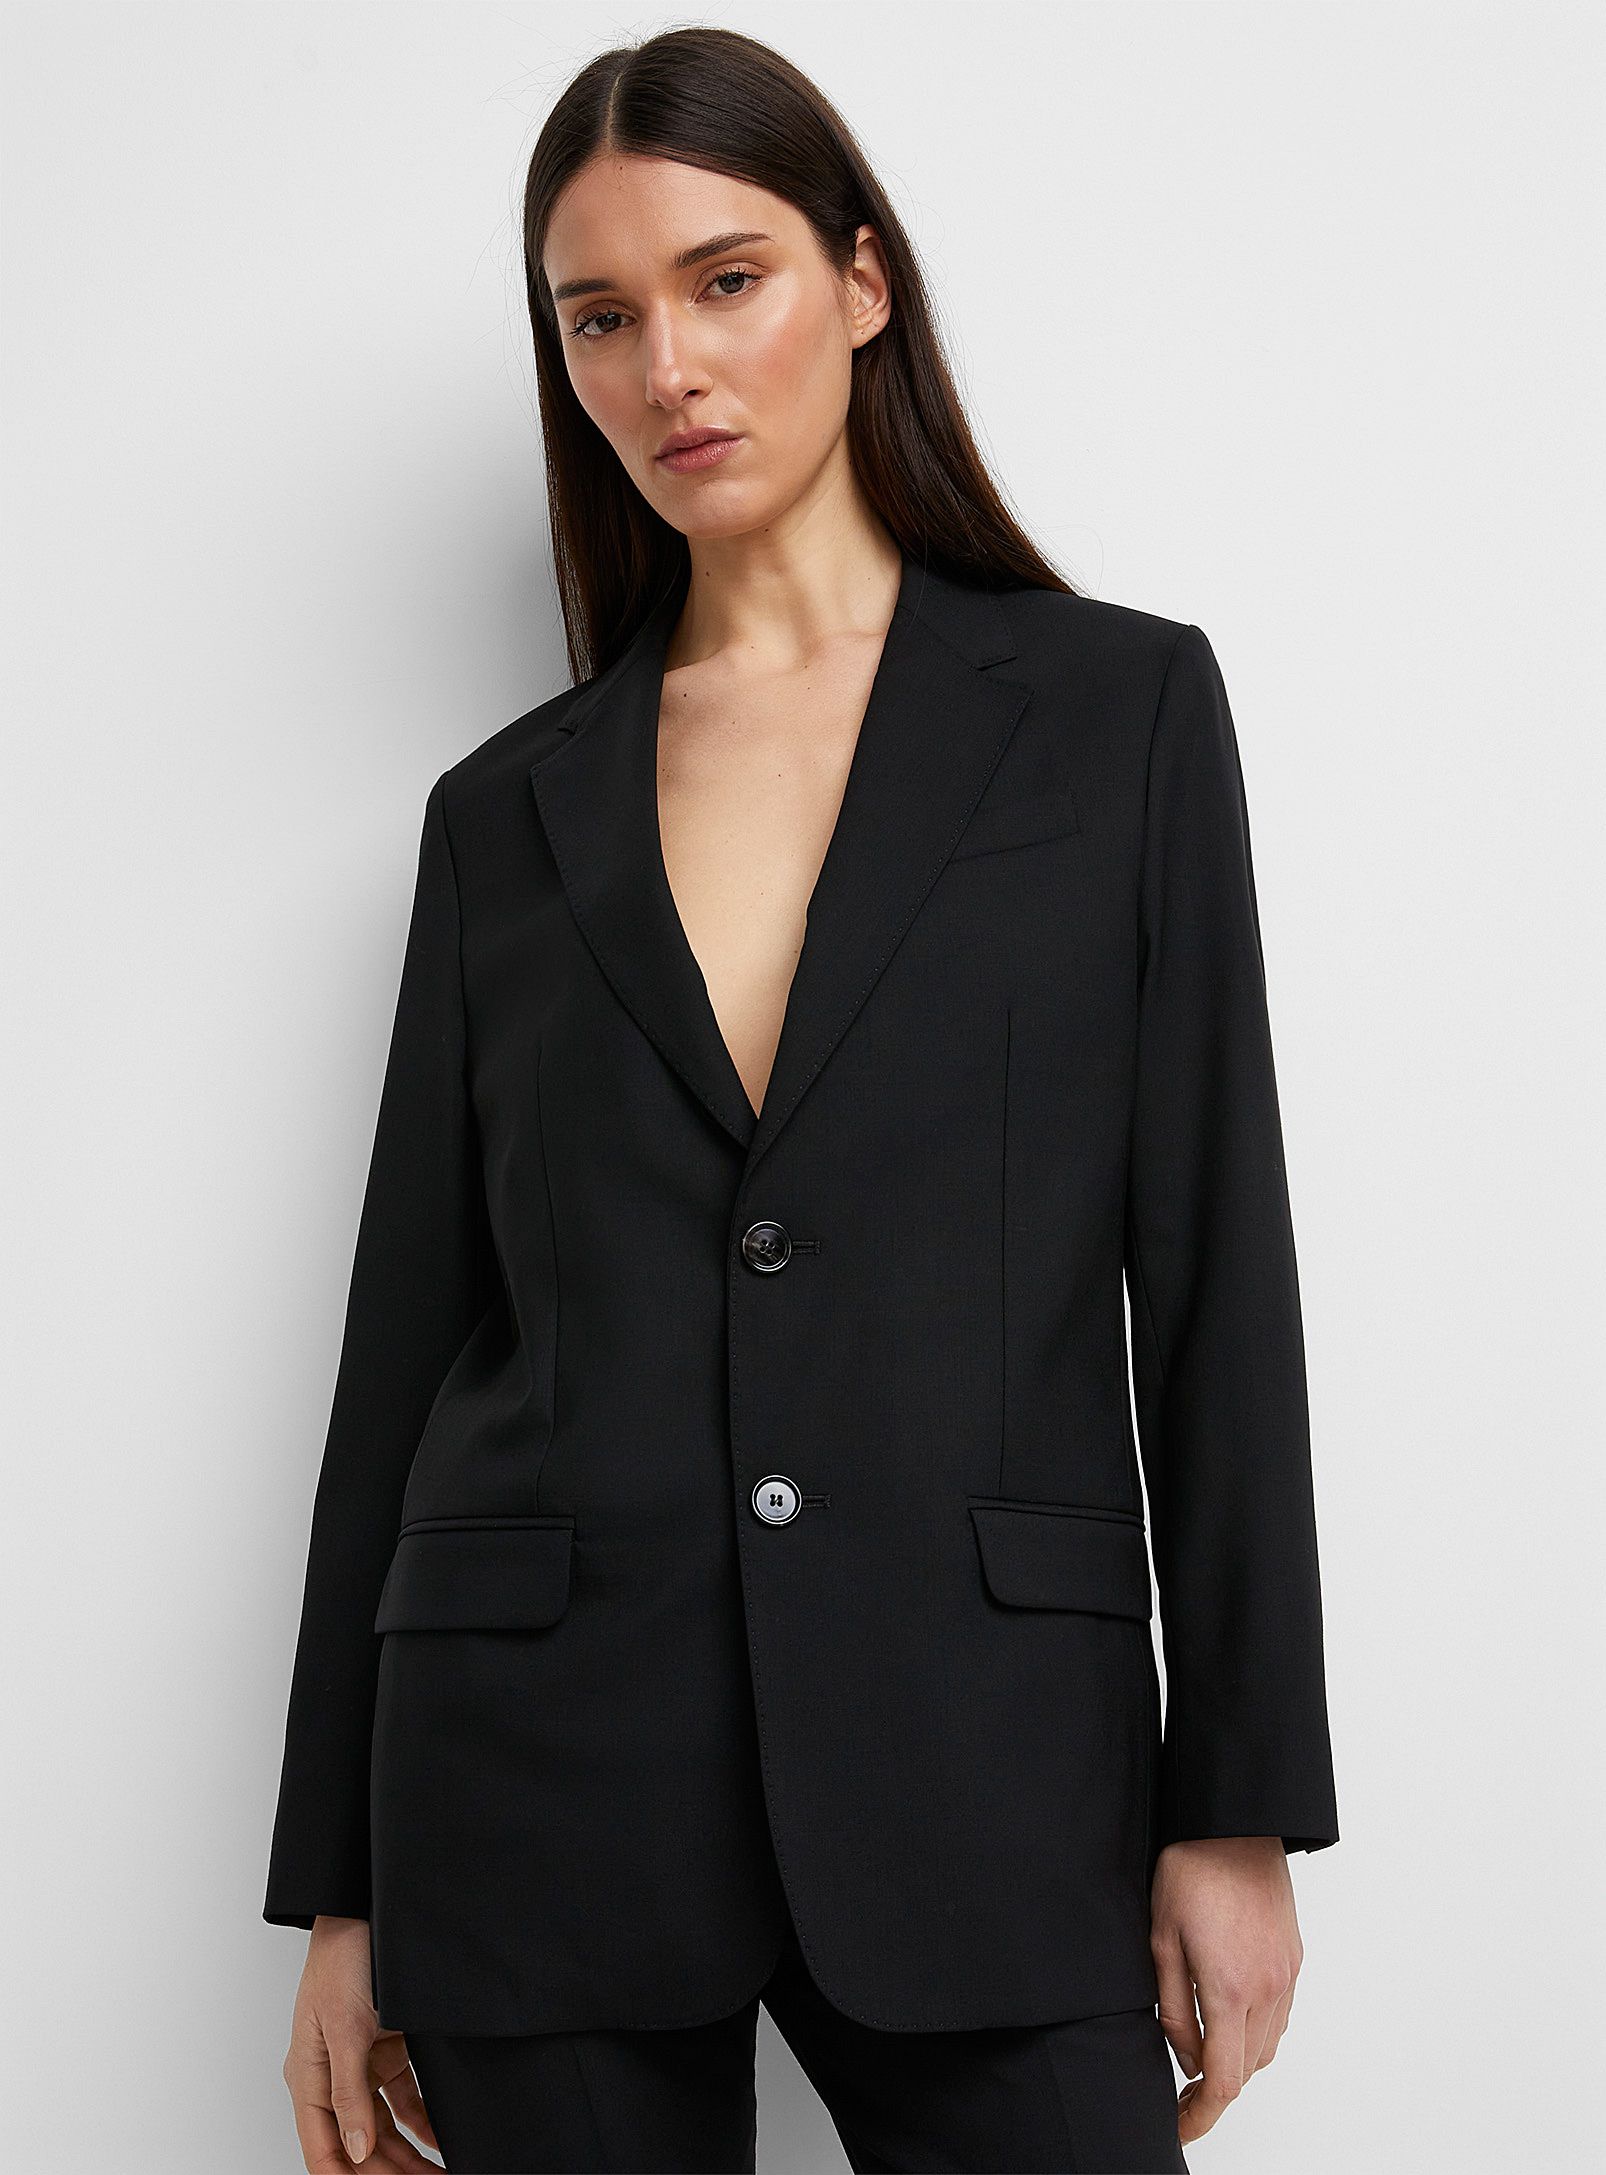 Ami - Women's Virgin wool black jacket